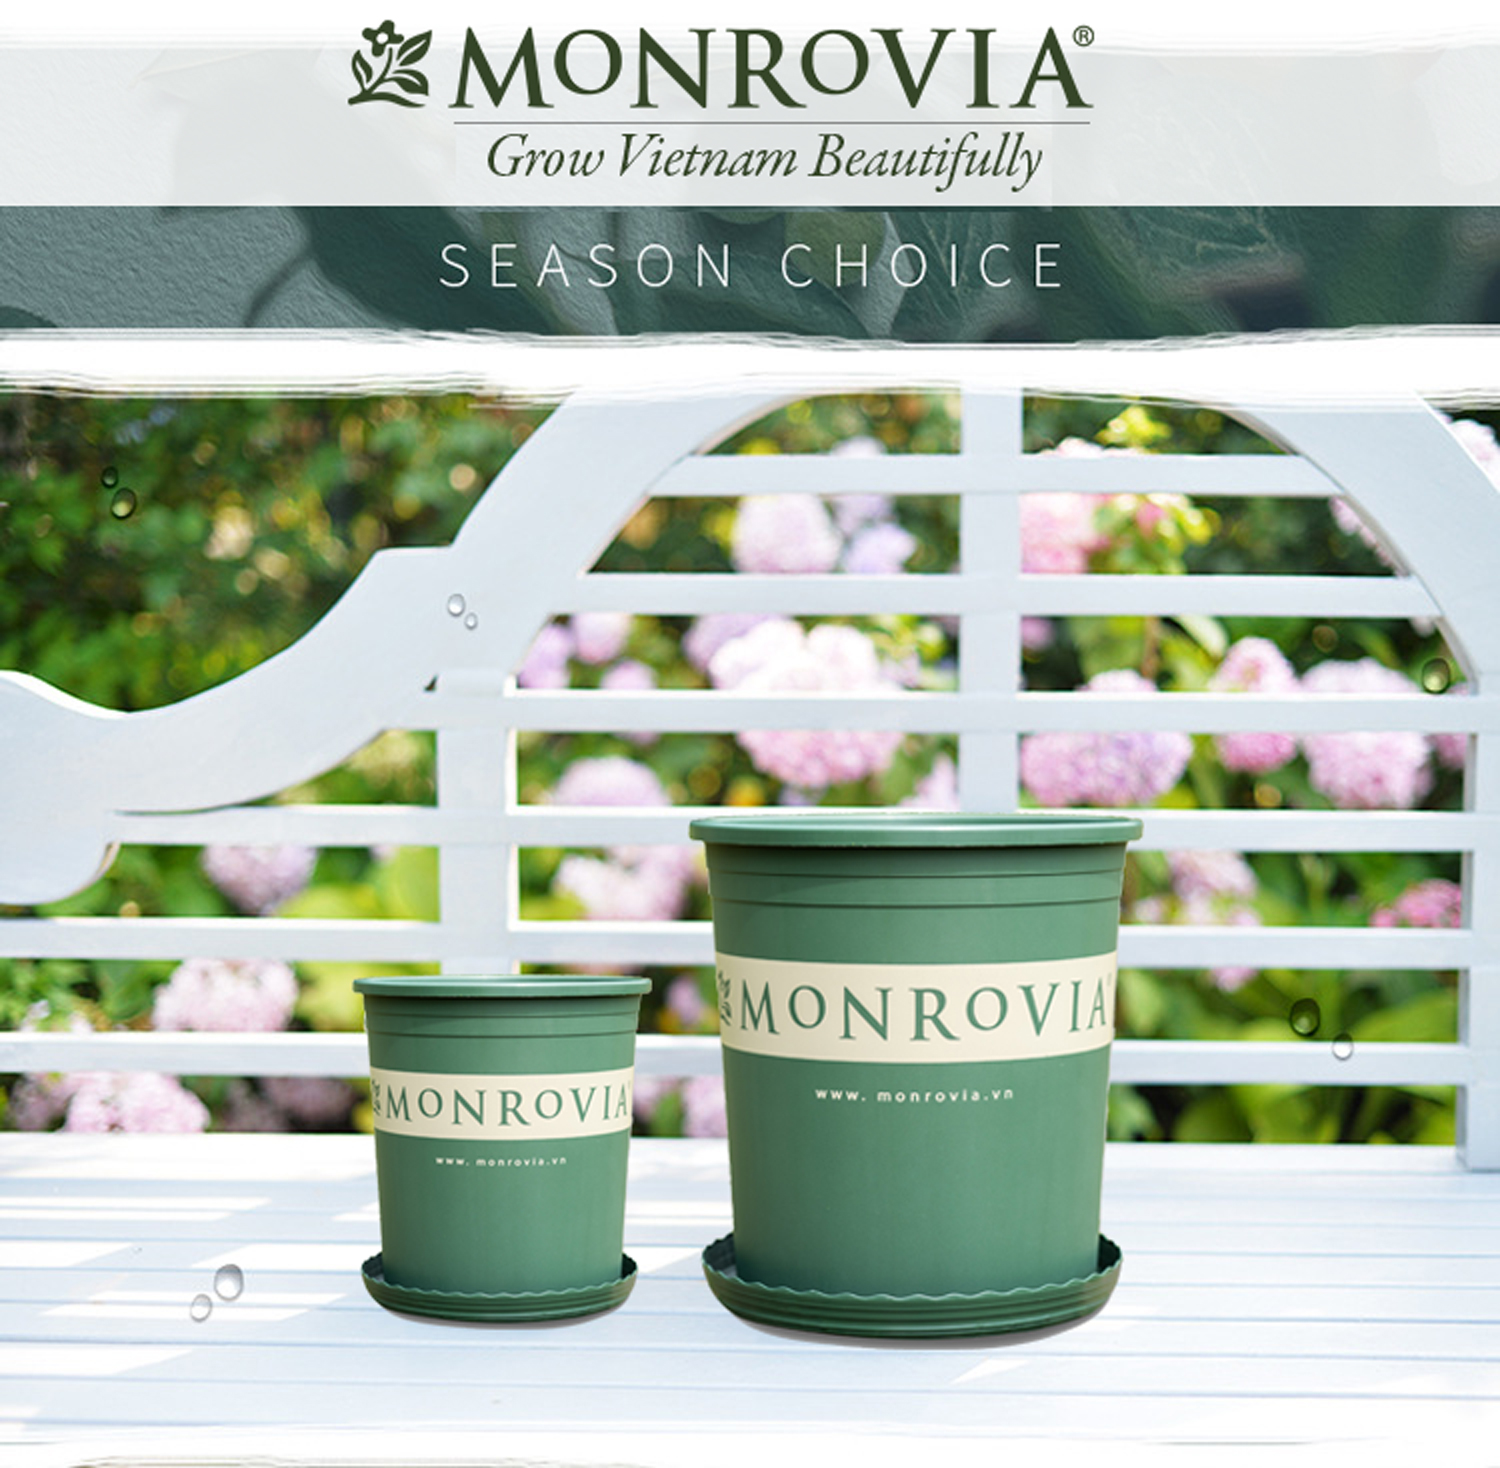 10 Chậu nhựa trồng cây MONROVIA 1 Gl, chậu trồng cây, chậu cây cảnh mini, để bàn, treo ban công, treo tường, cao cấp, chính hãng thương hiệu MONROVIA